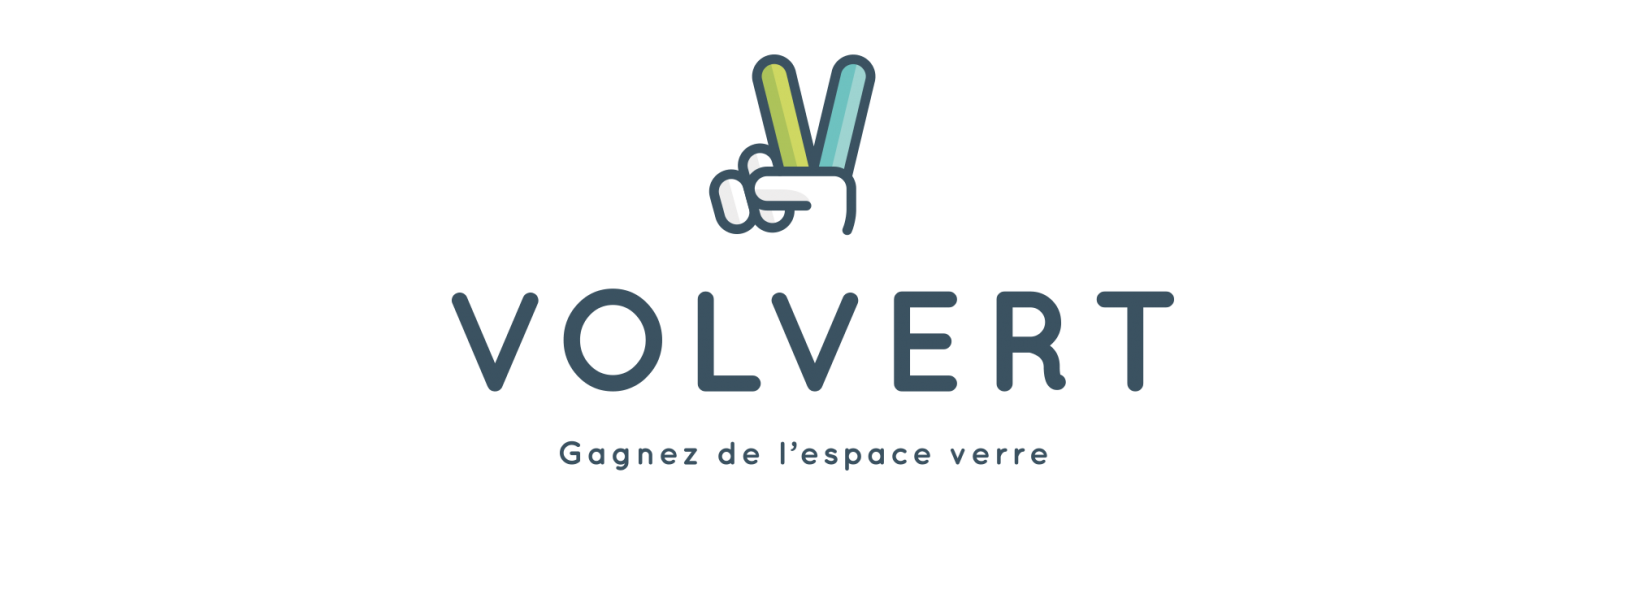 Volvert_logo1